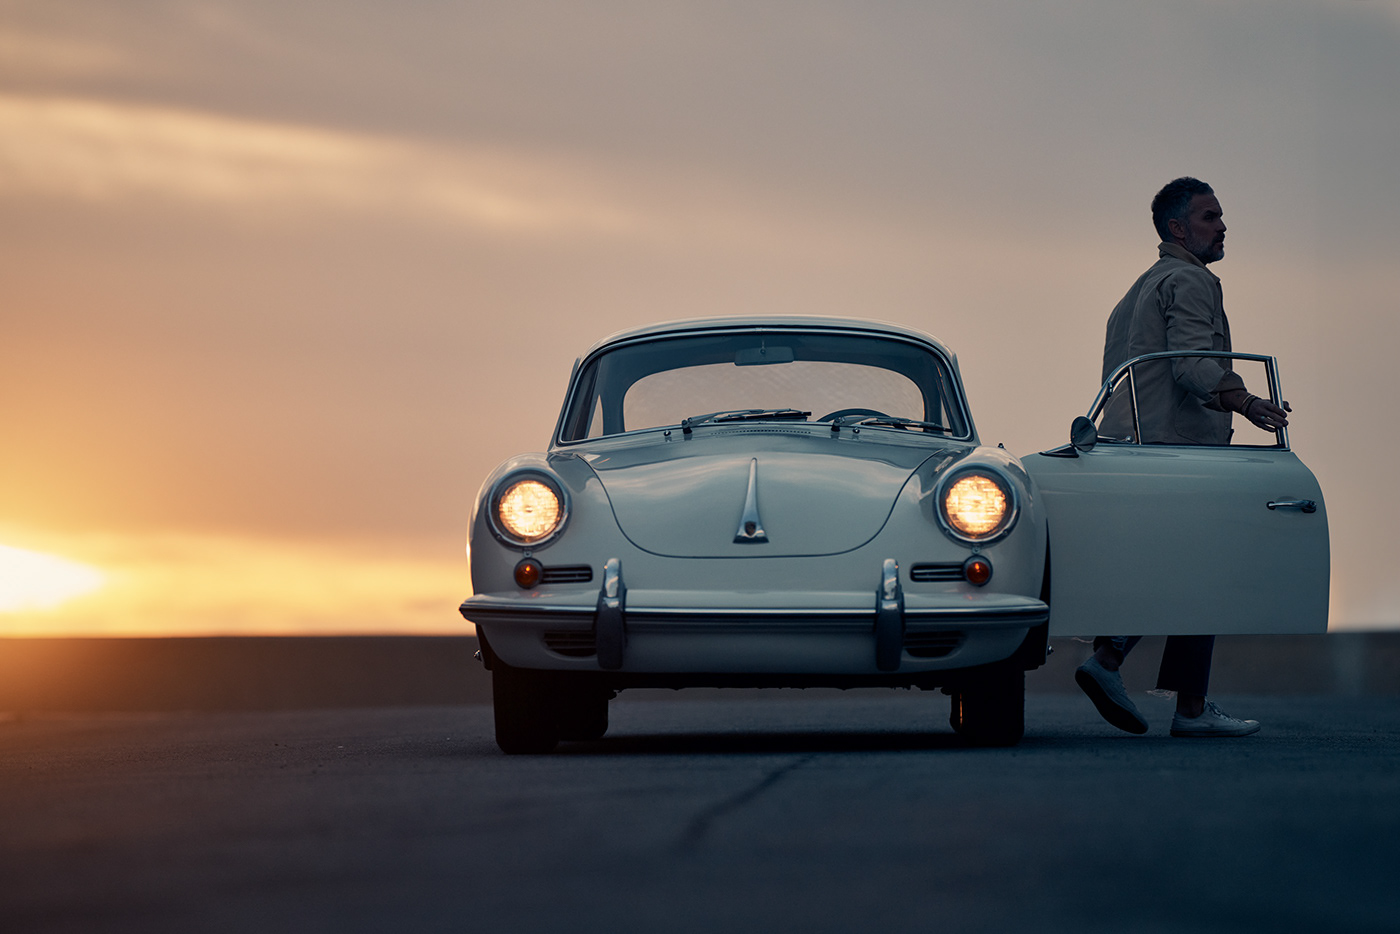 Porsche rolex Vintagecars vintage automotive   Automotive Photography sunset lifestyle